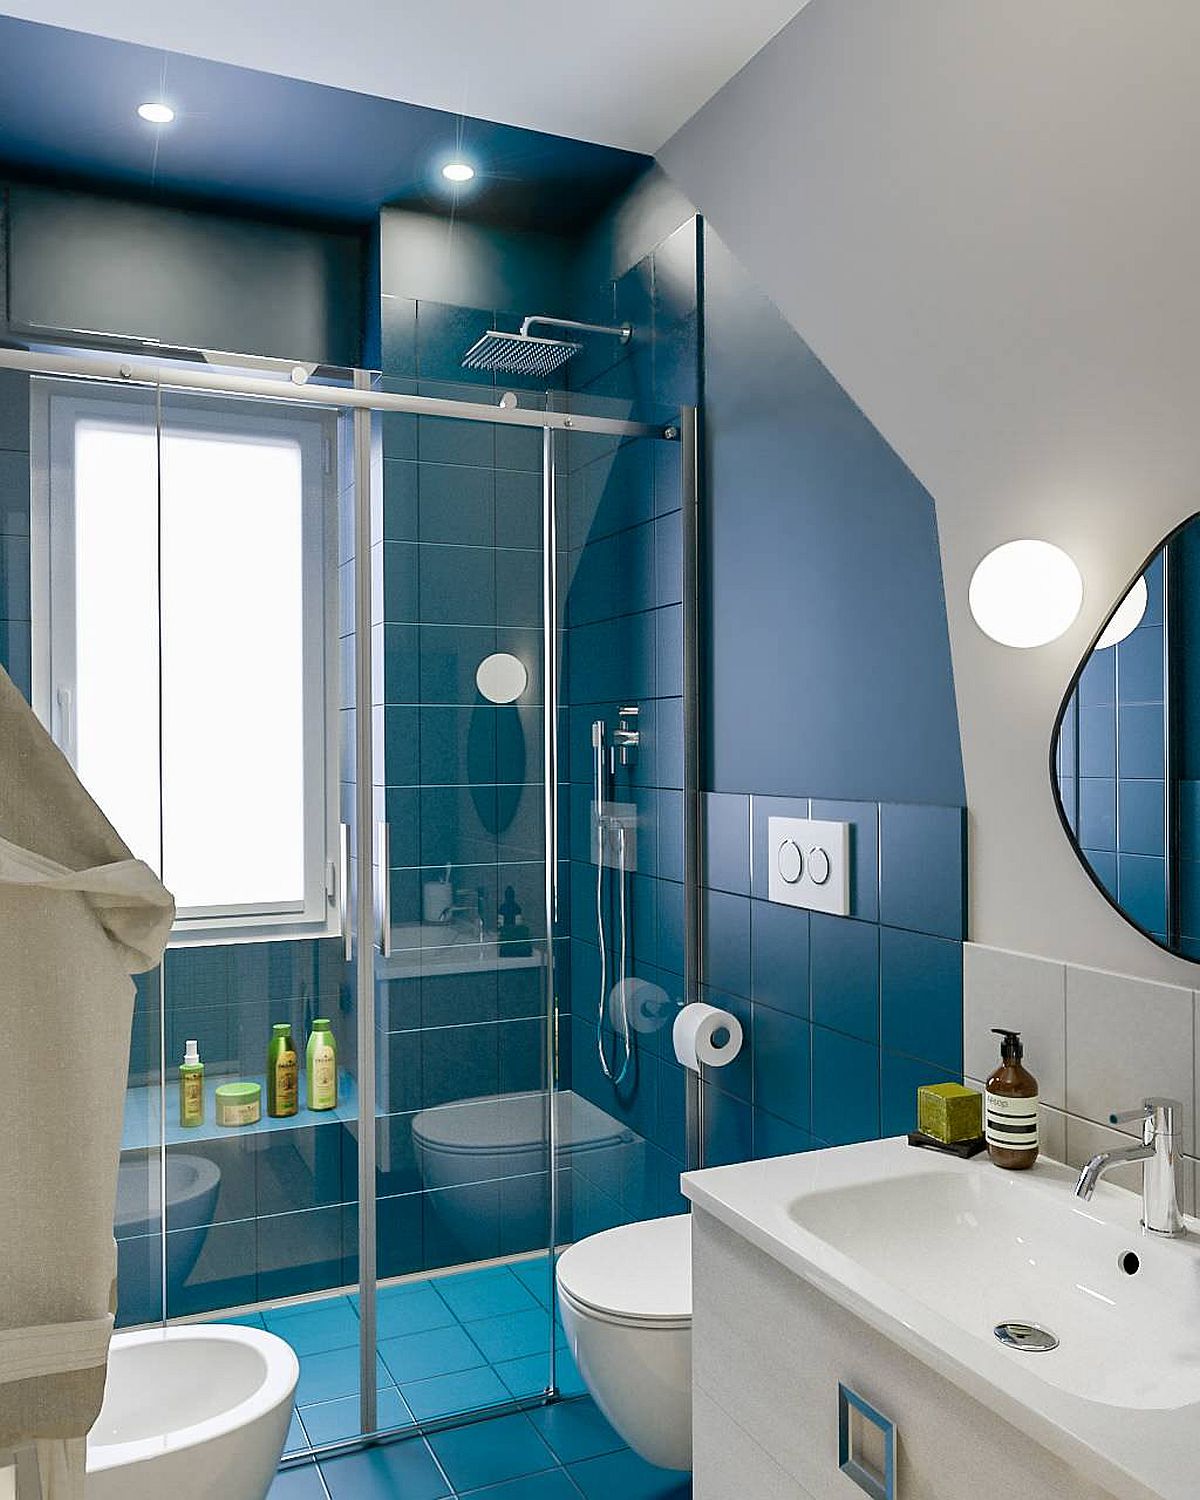 Hình ảnh phòng tắm nhỏ với buồng tắm đứng ốp gạch màu xanh, vách kính, bên ngoài là khu vực vệ sinh, đèn LED âm trần